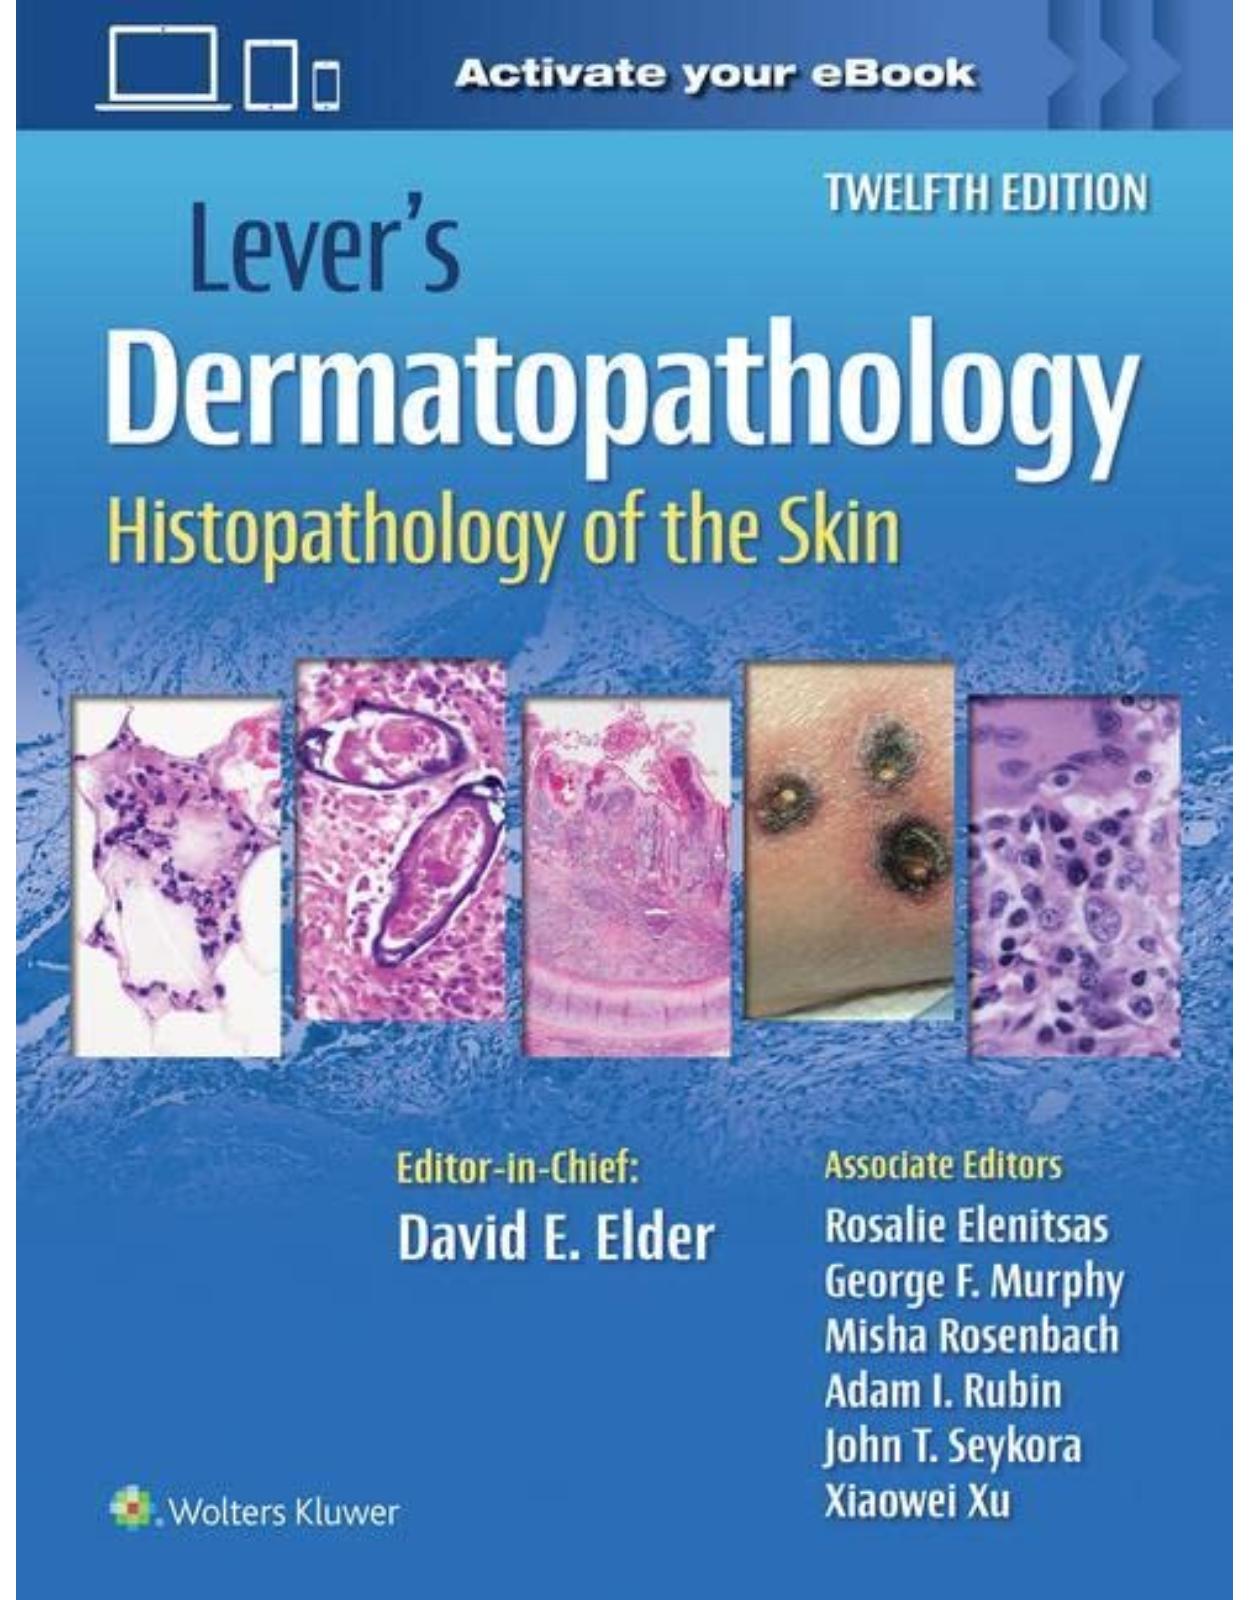 Lever’s Dermatopathology: Histopathology of the Skin